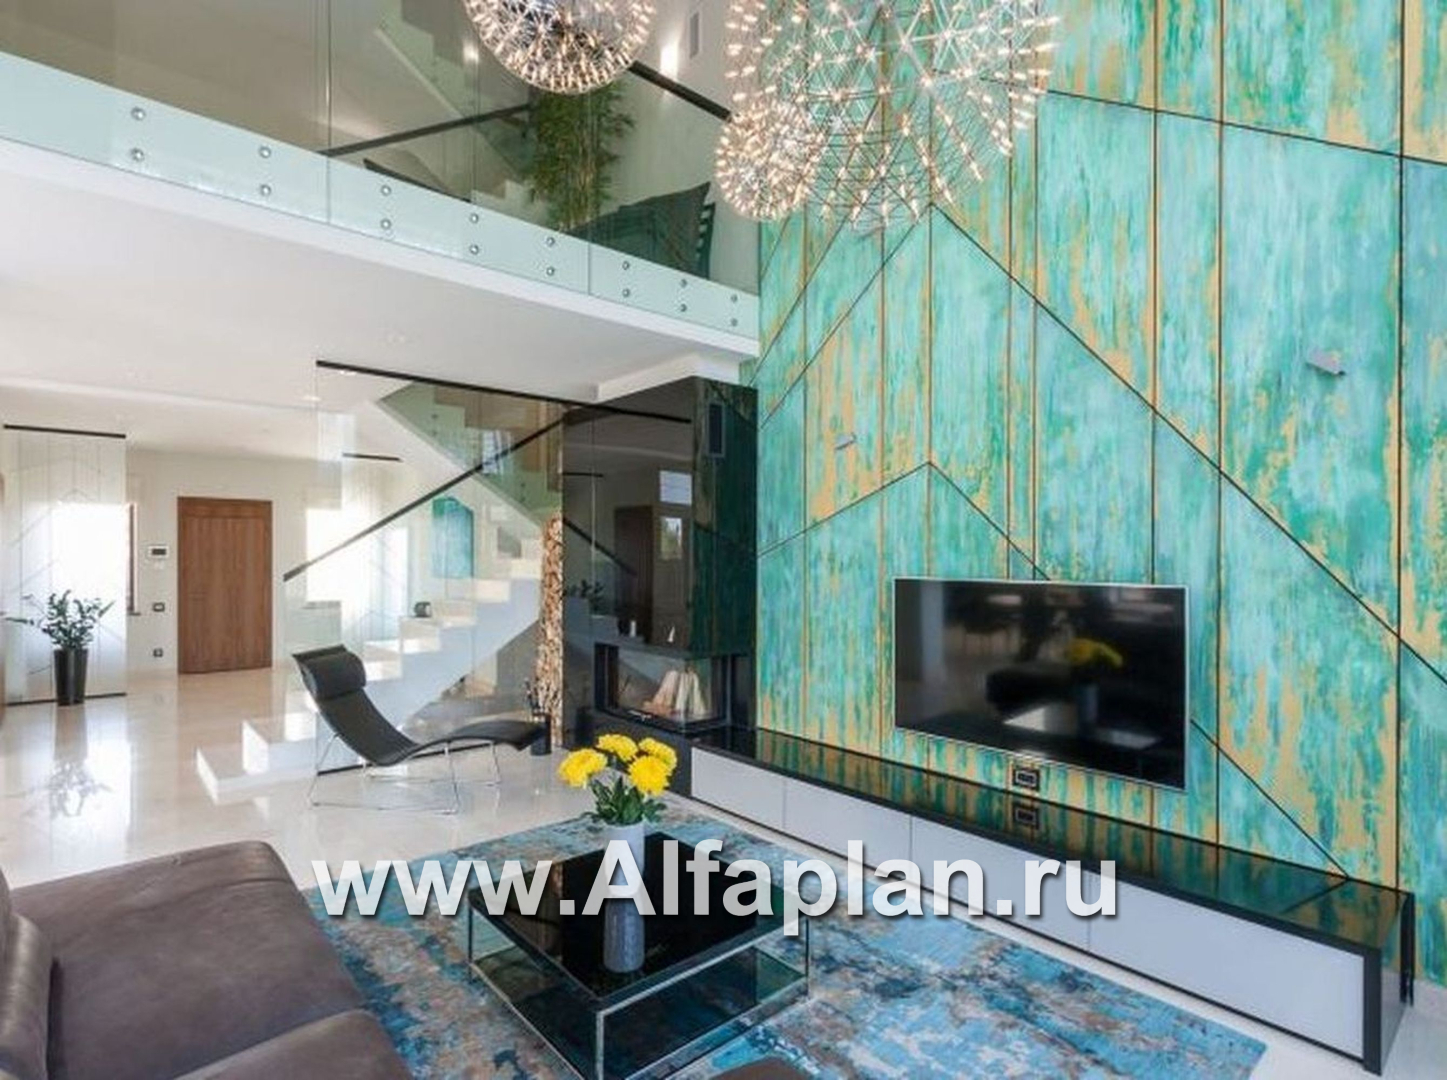 Проекты домов Альфаплан - «Современник» с панорамными окнами - дополнительное изображение №4